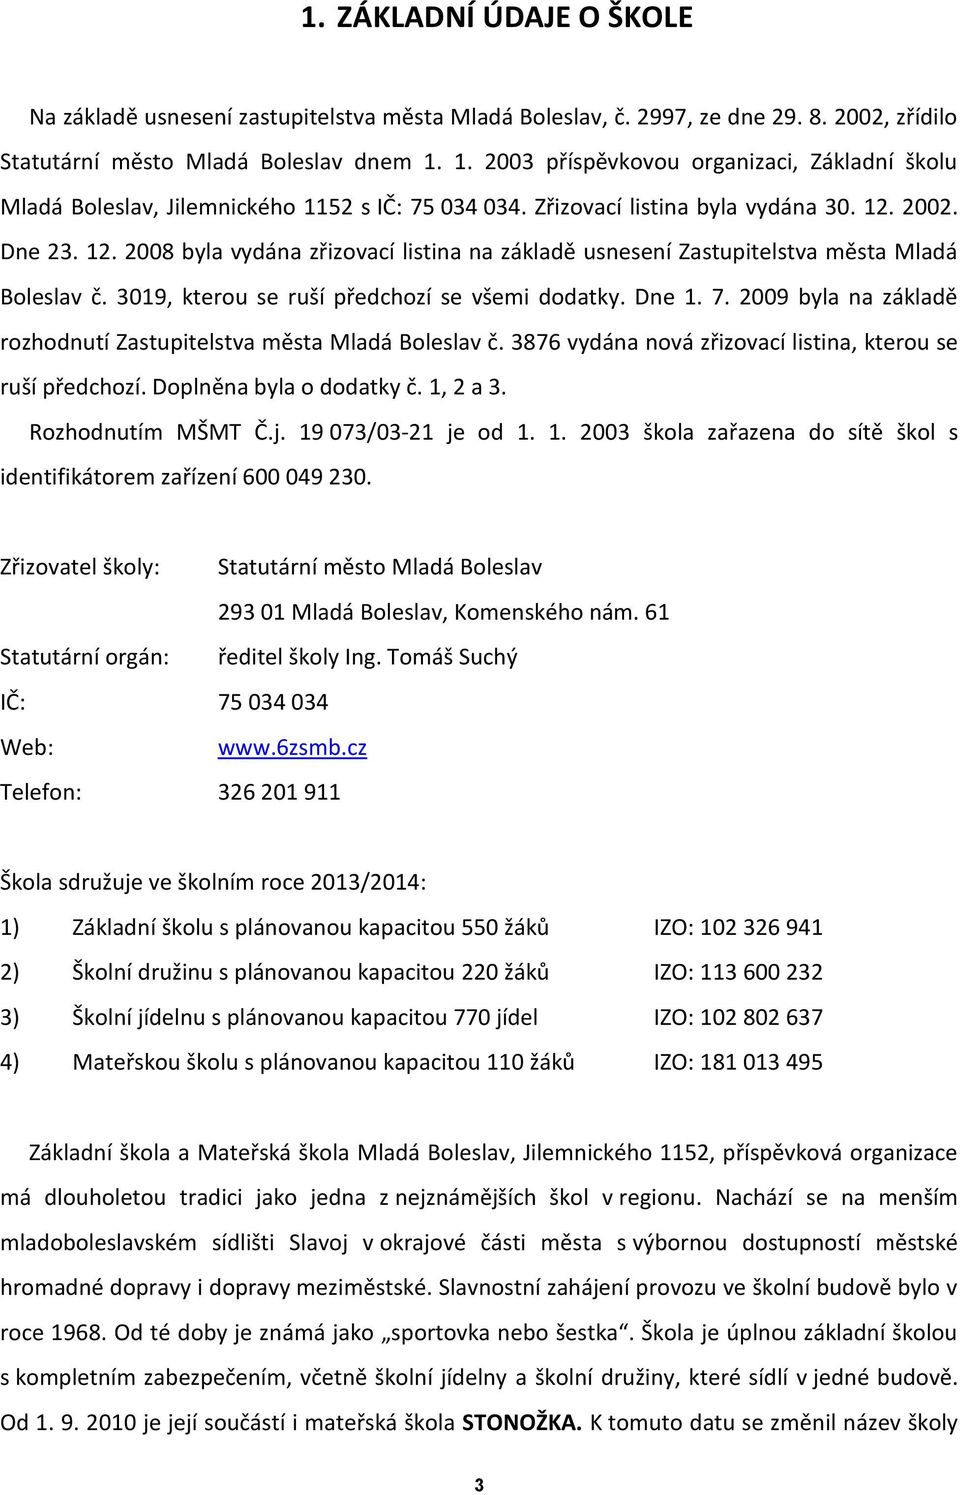 2002. Dne 23. 12. 2008 byla vydána zřizovací listina na základě usnesení Zastupitelstva města Mladá Boleslav č. 3019, kterou se ruší předchozí se všemi dodatky. Dne 1. 7.